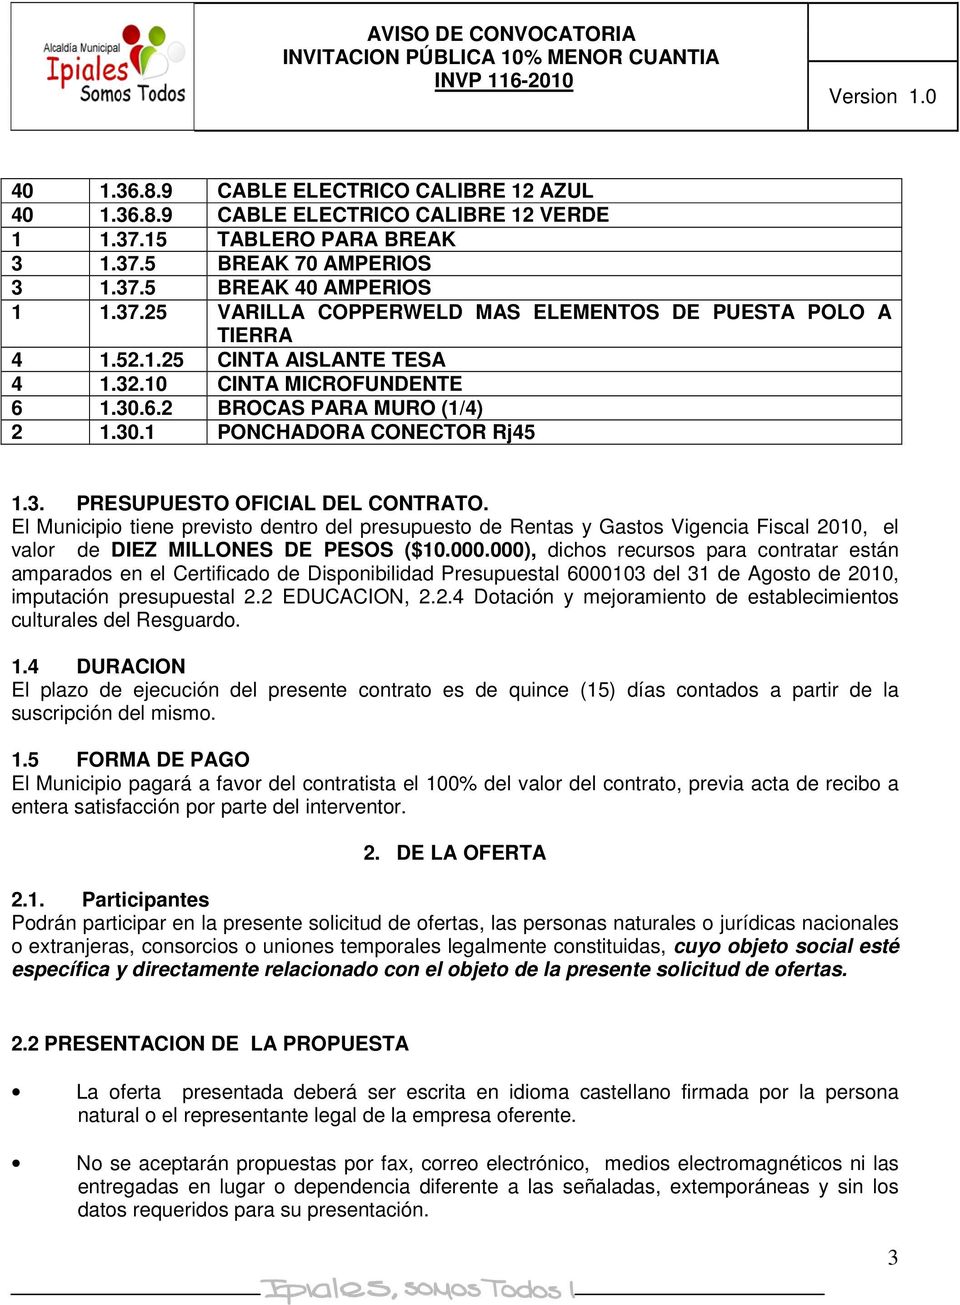 El Municipio tiene previsto dentro del presupuesto de Rentas y Gastos Vigencia Fiscal, el valor de DIEZ MILLONES DE PESOS ($10.000.